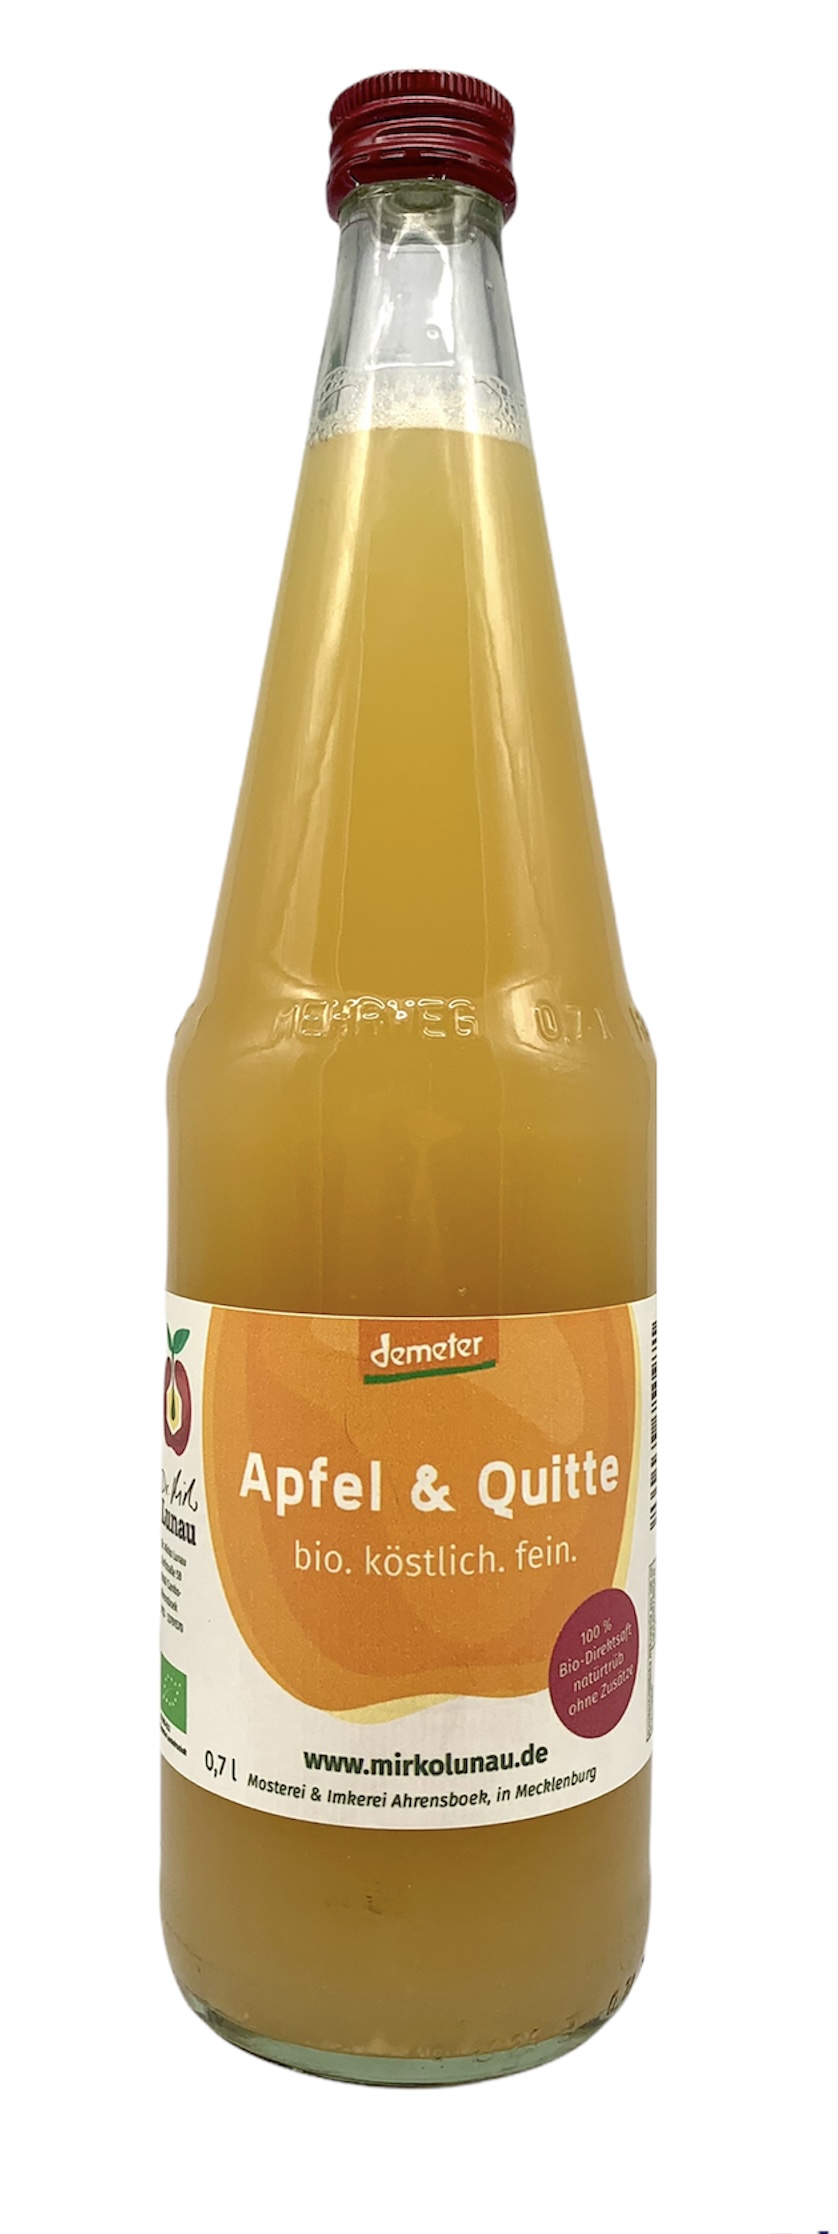 Bio - Apfelsaft "Apfel & Quitte" 0,7l